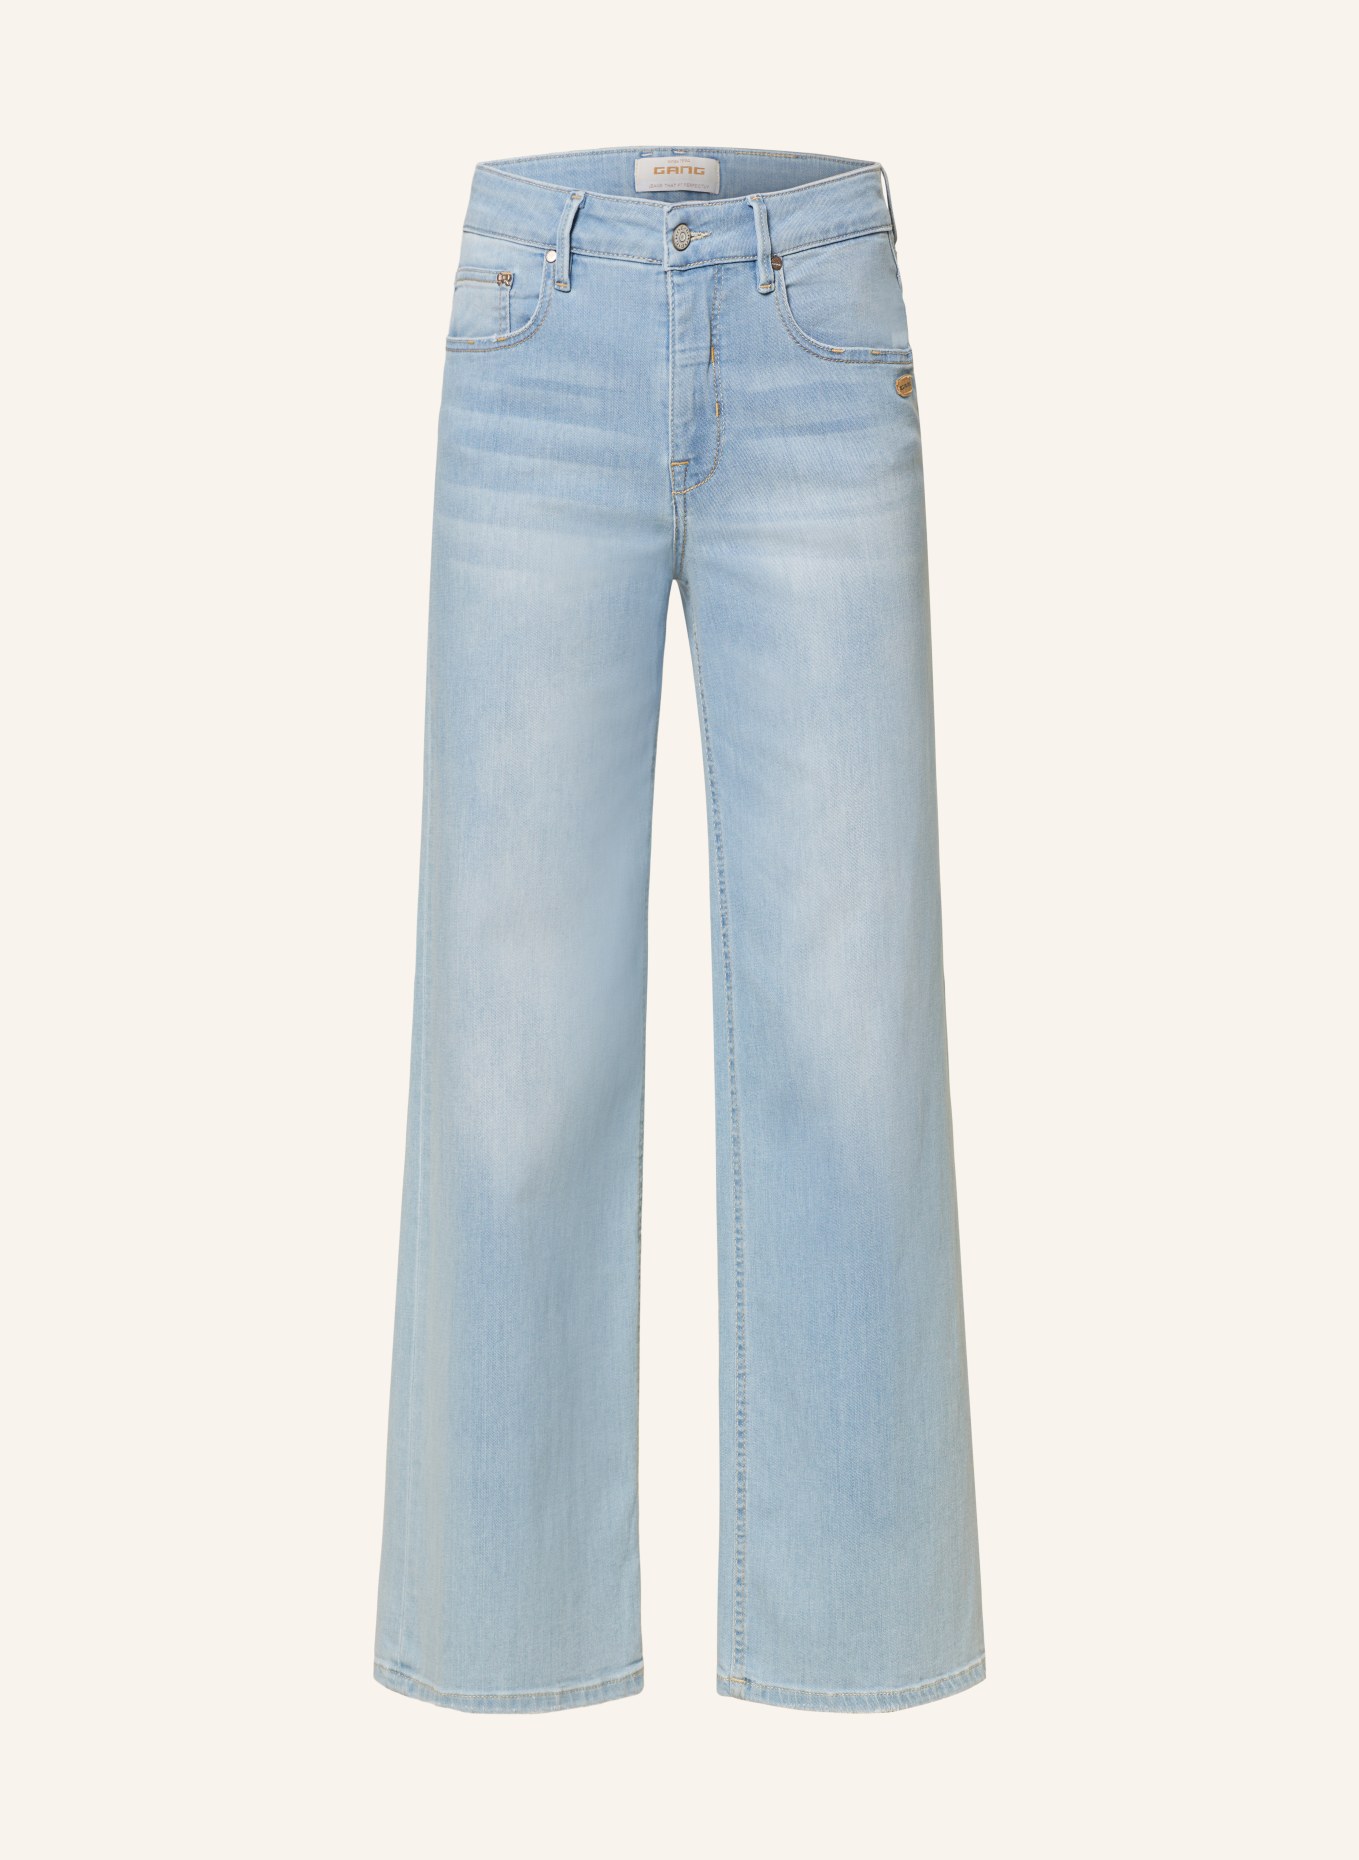 GANG Flared jeans CARLOTTA, Color: 7314 love light wash (Image 1)